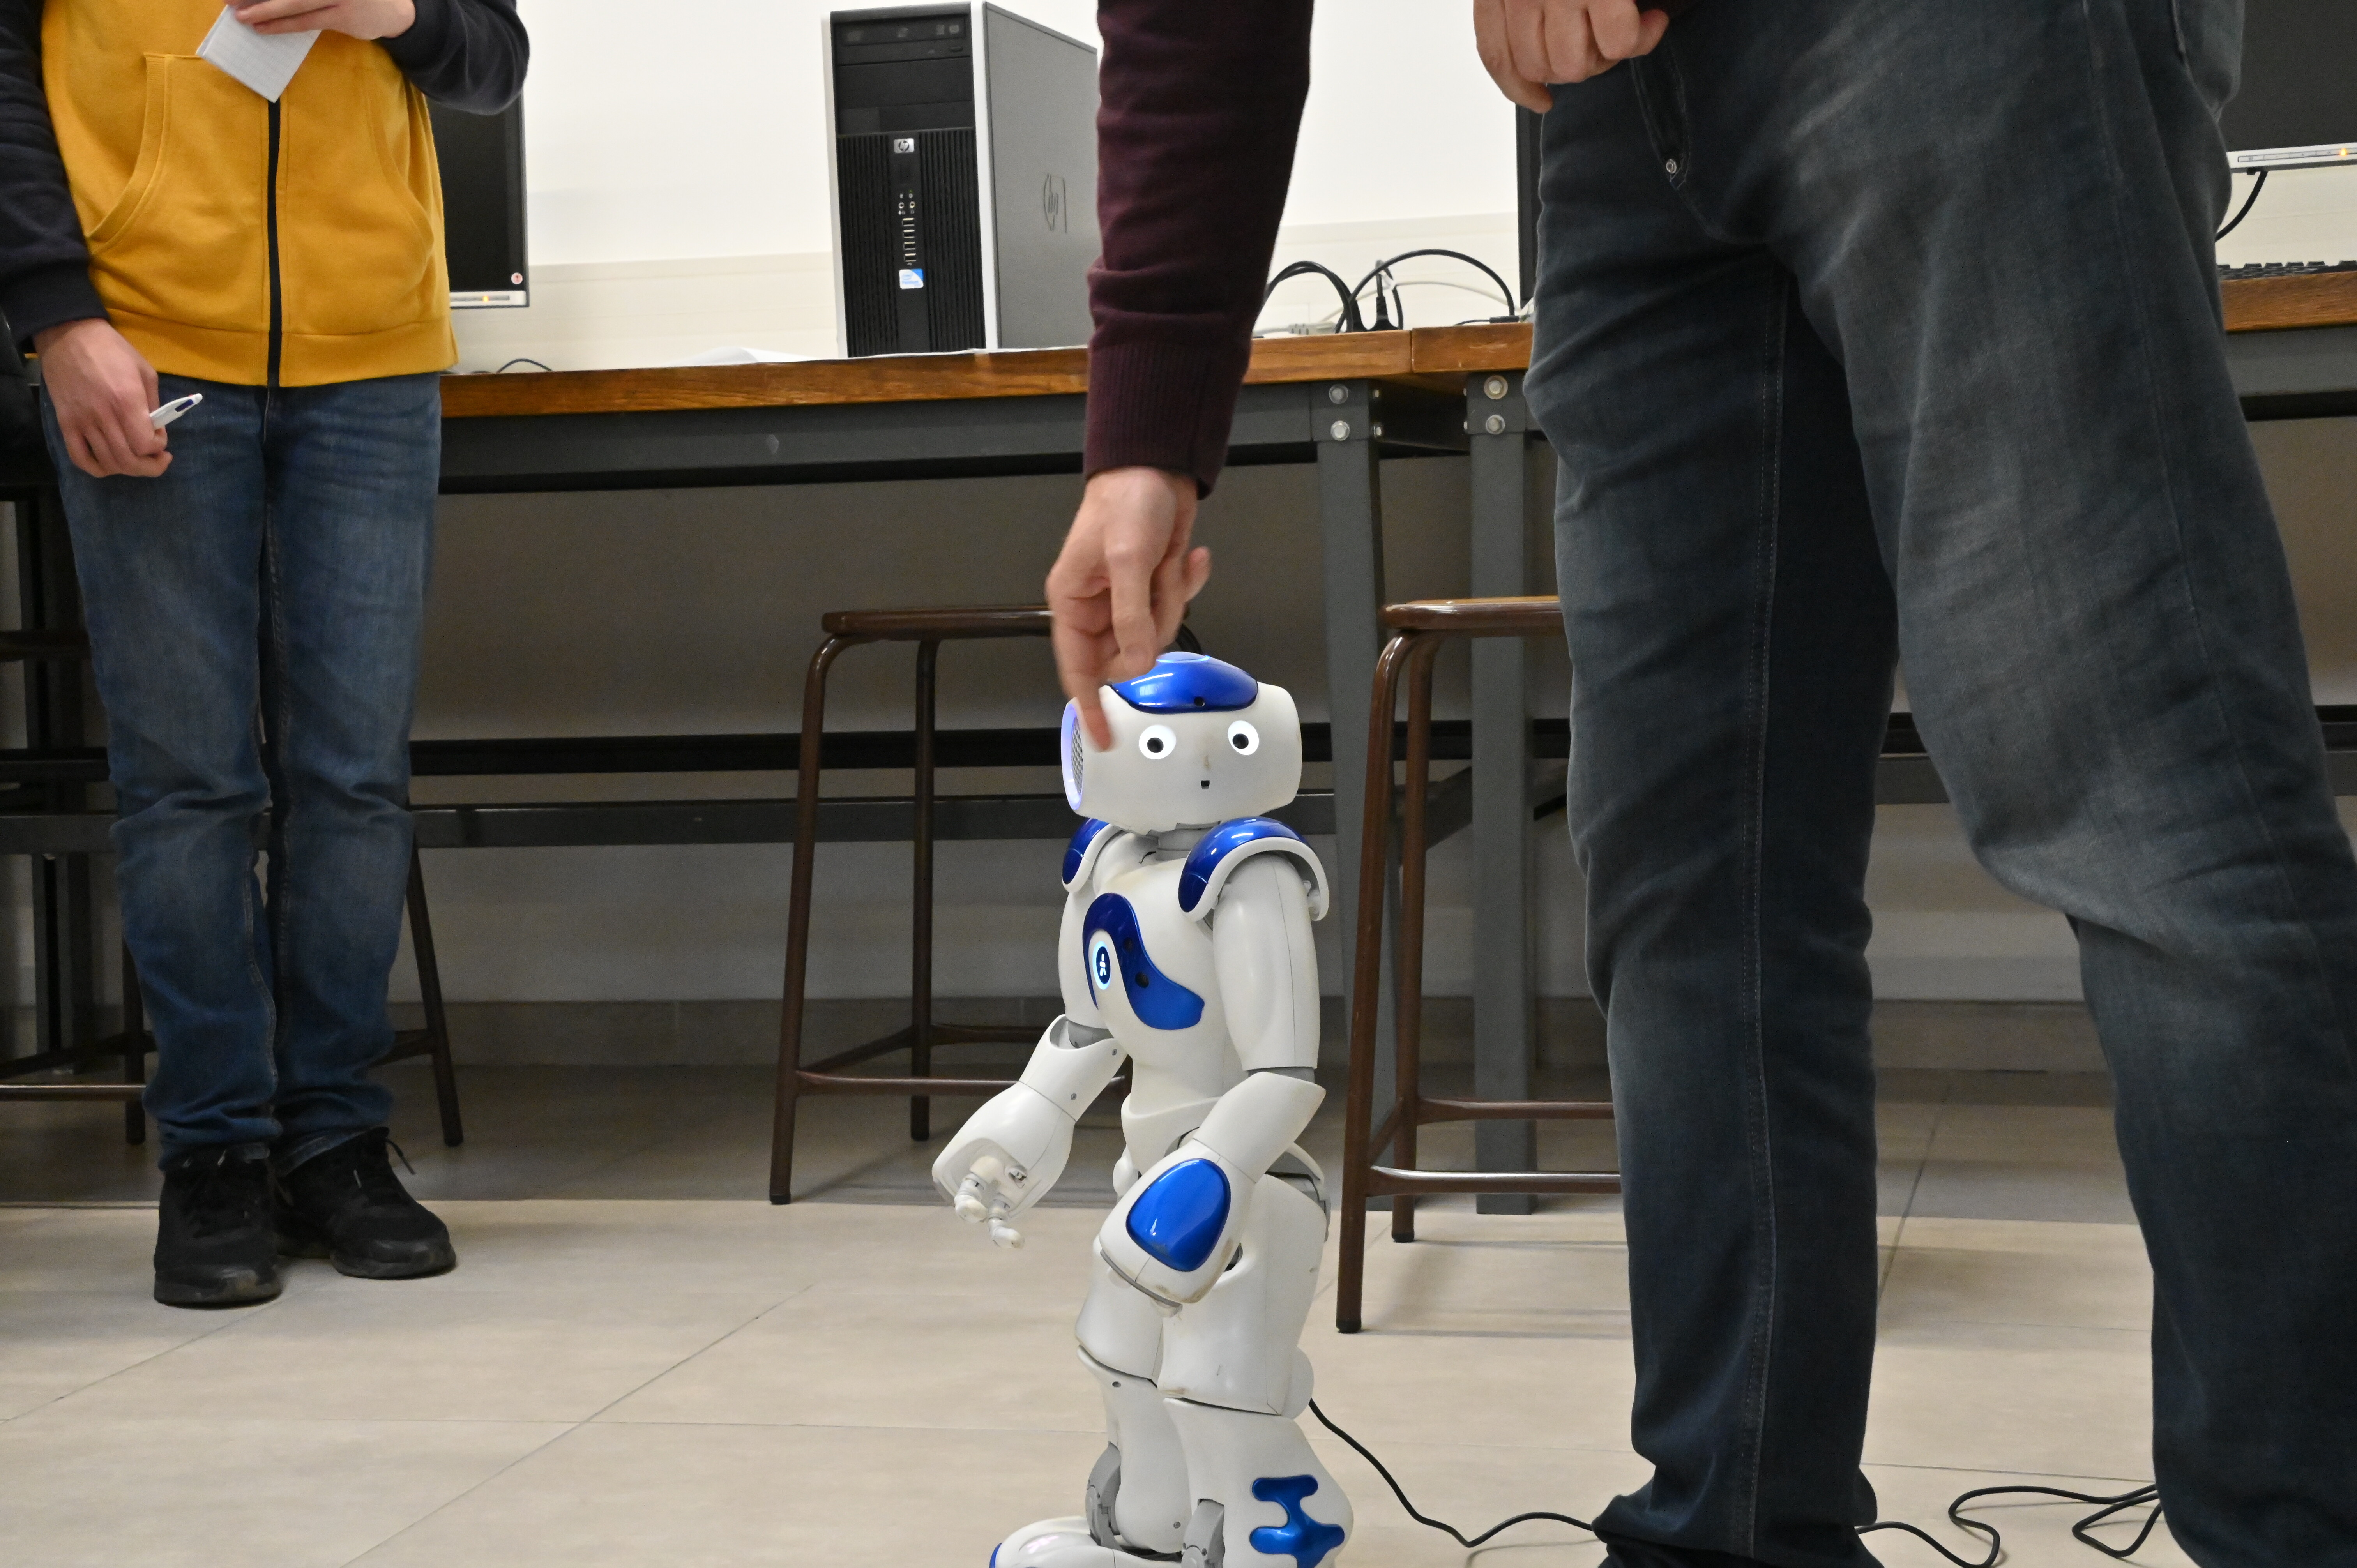 Le robot est présenté aux élèves